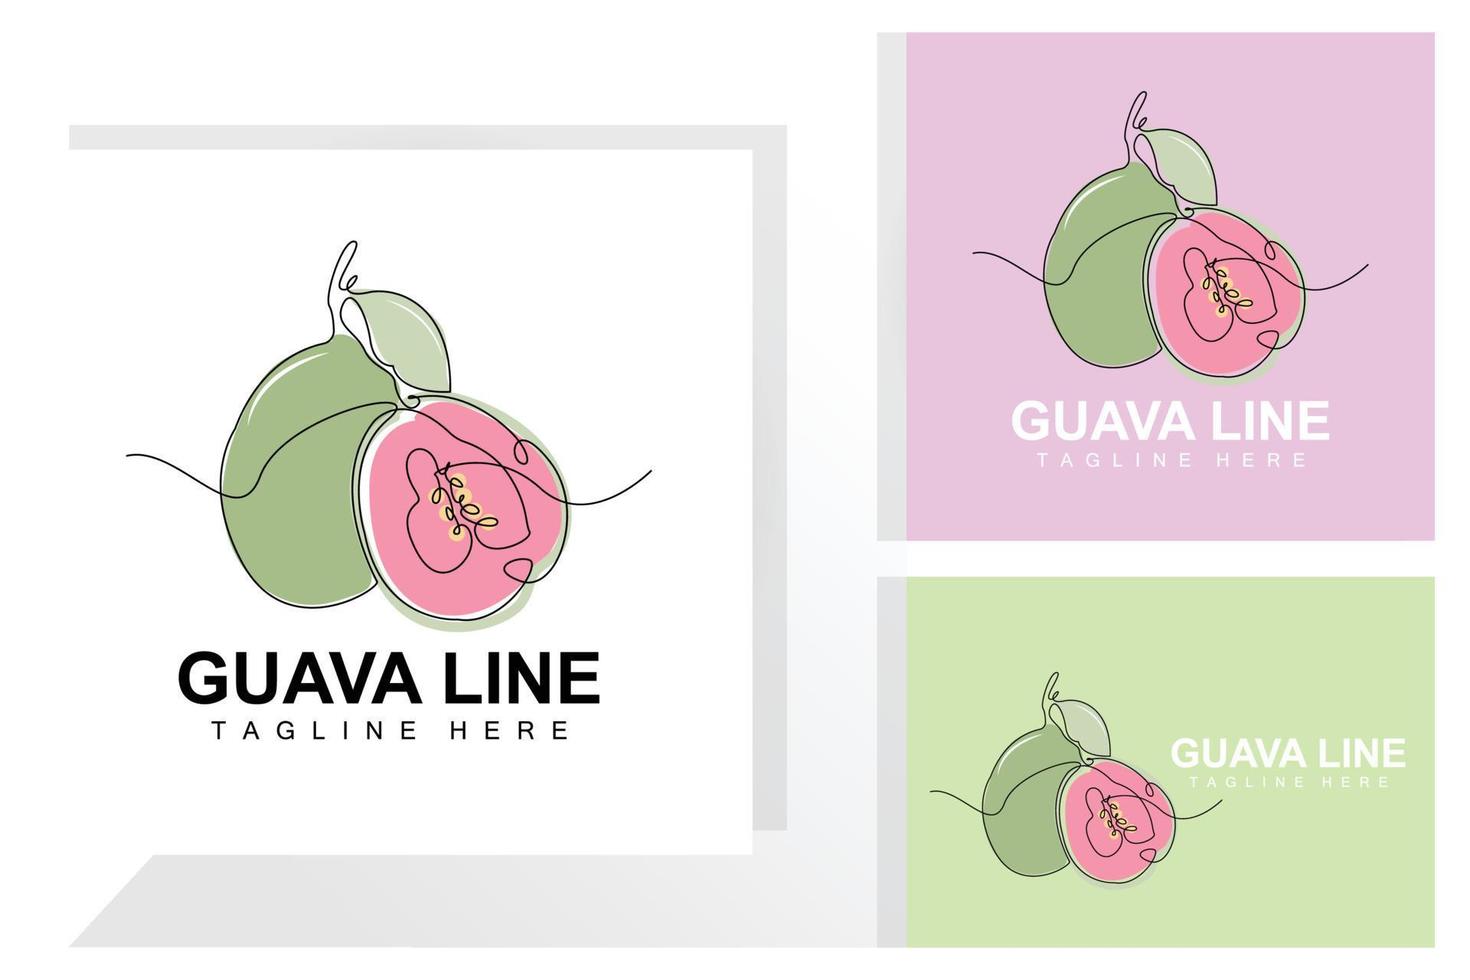 acqua guaiava logo design vettore con linea stile fresco frutta mercato illustrazione vitamina pianta